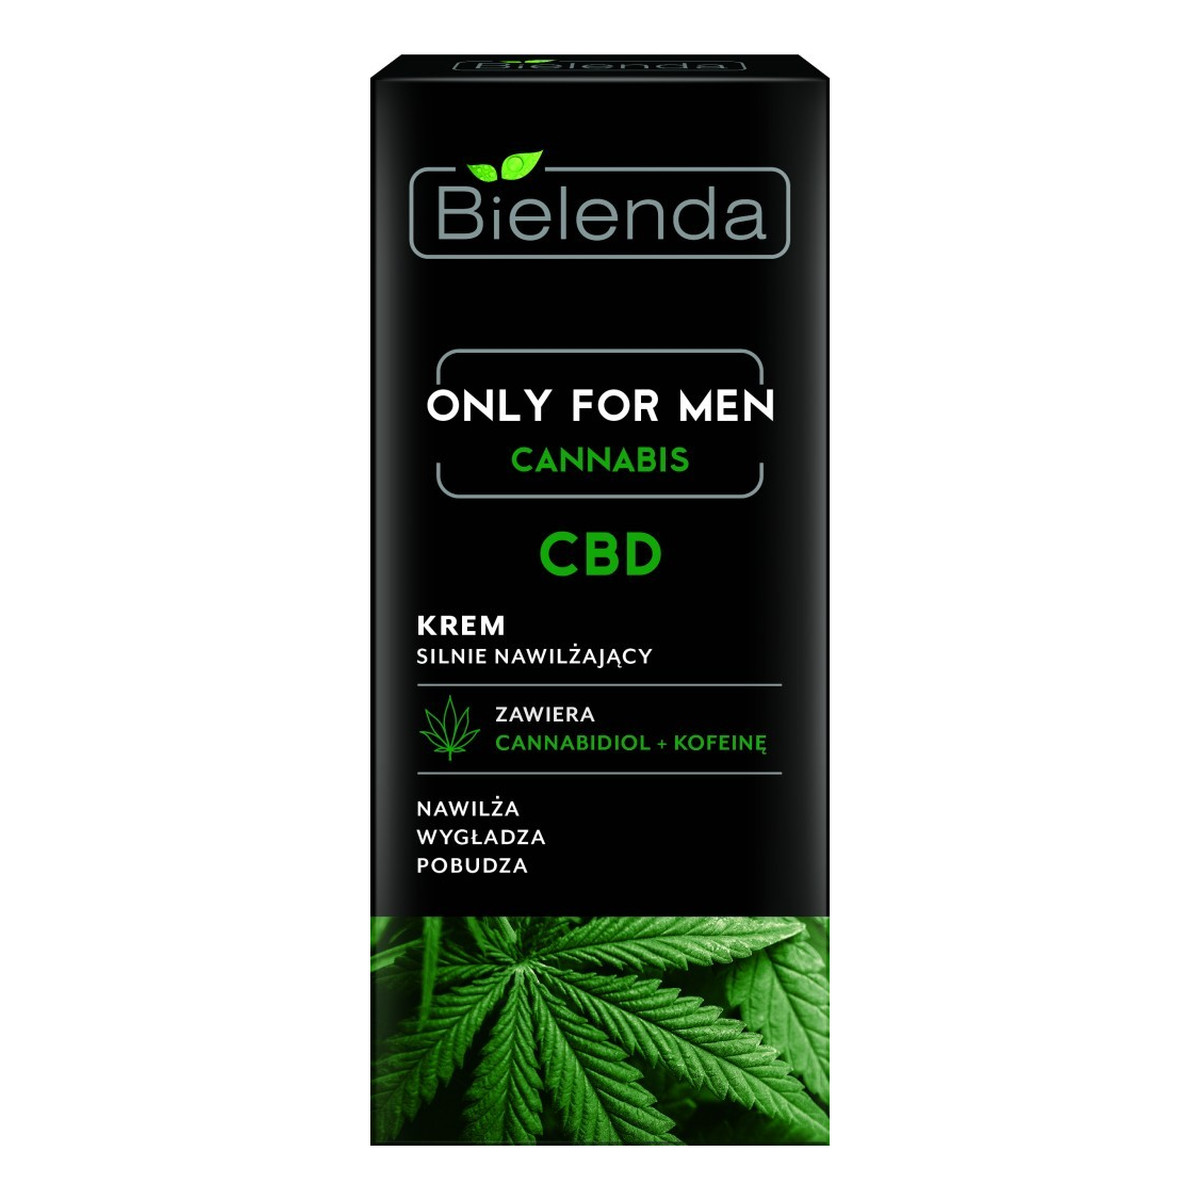 Bielenda Only for Men Cannabis CBD Krem silnie nawilżający 50ml